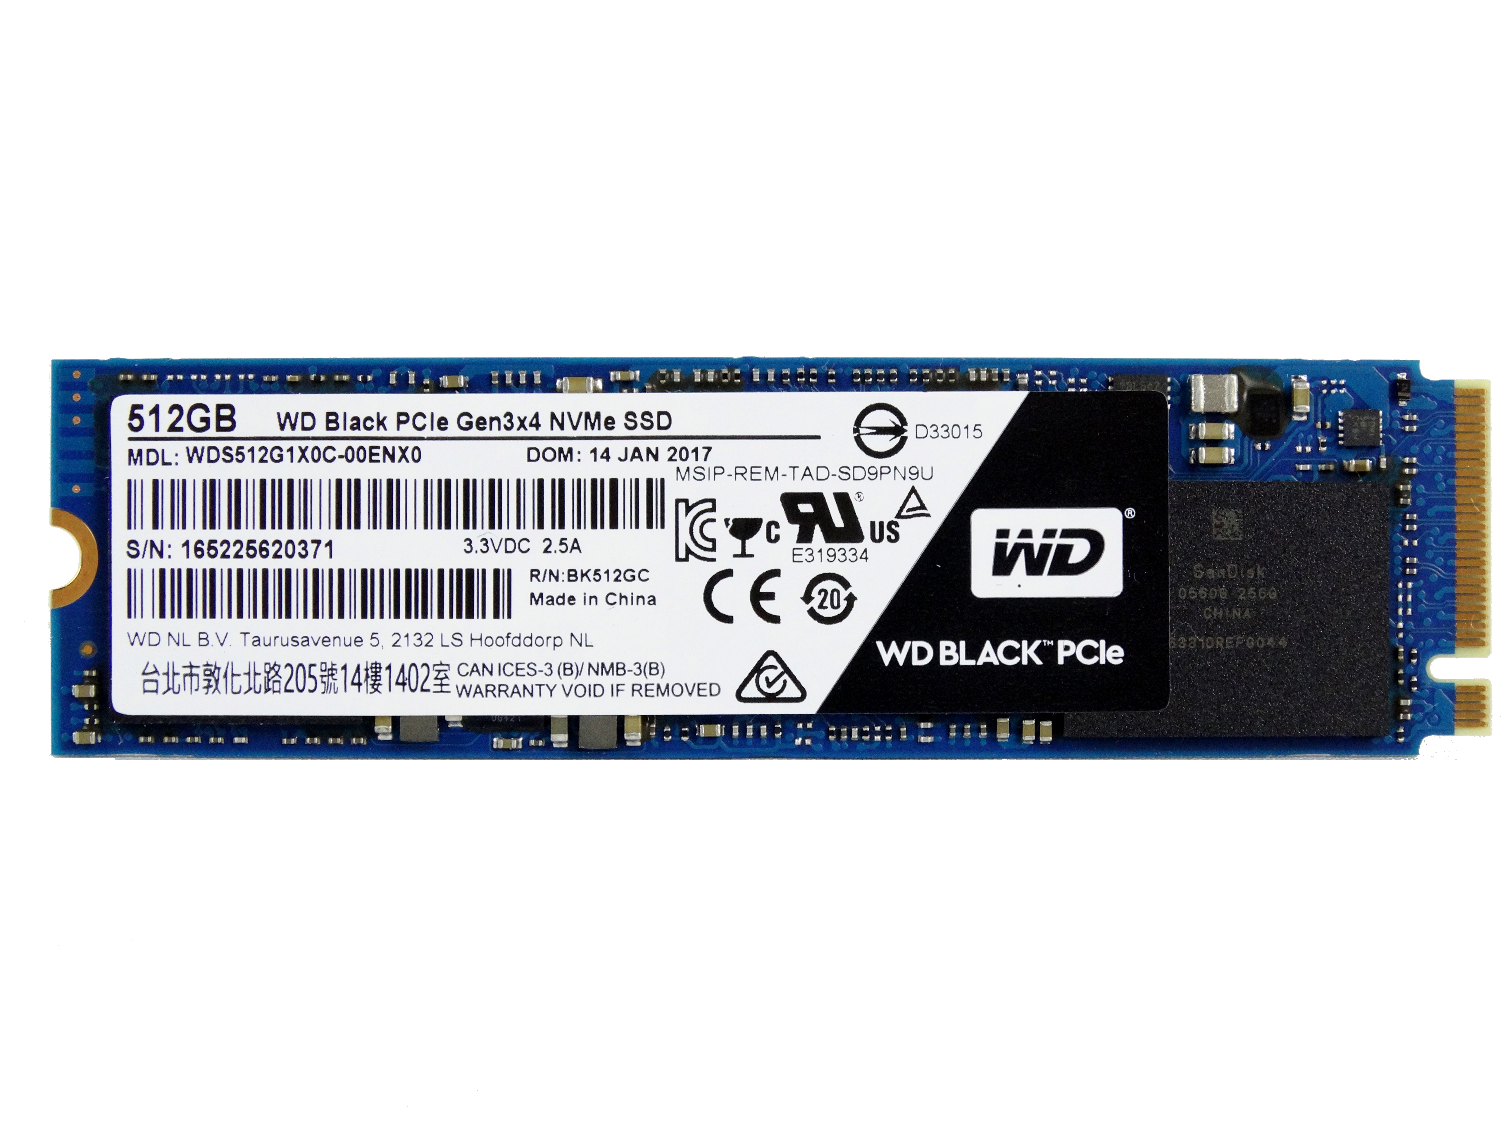 WD Black PCIe 512GB SSD Review Tom's Hardware | Tom's Hardware